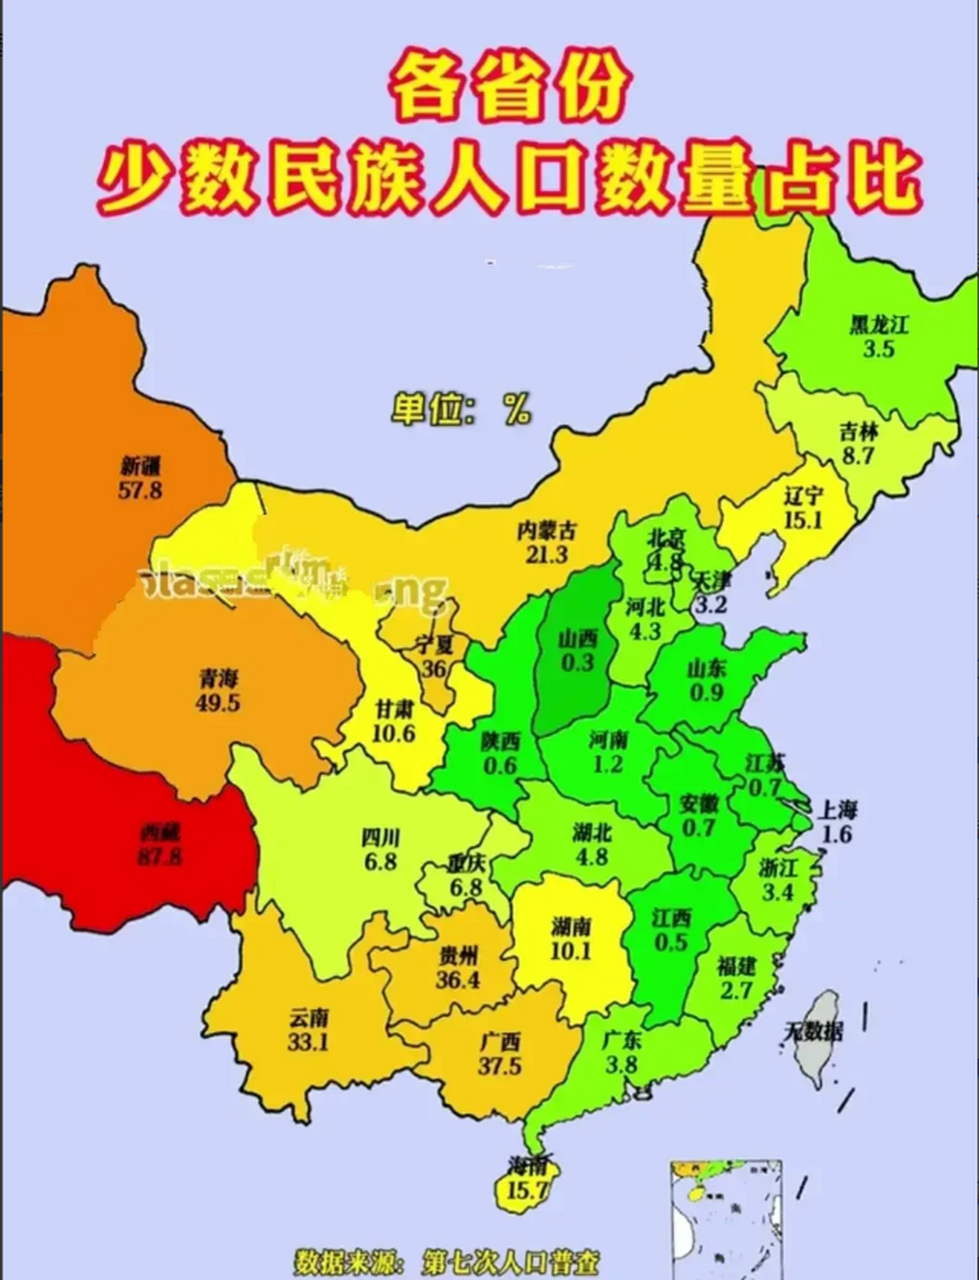 江西省的这个少数民族人口比例在全国排名第一,差点又被陕西夺了夺